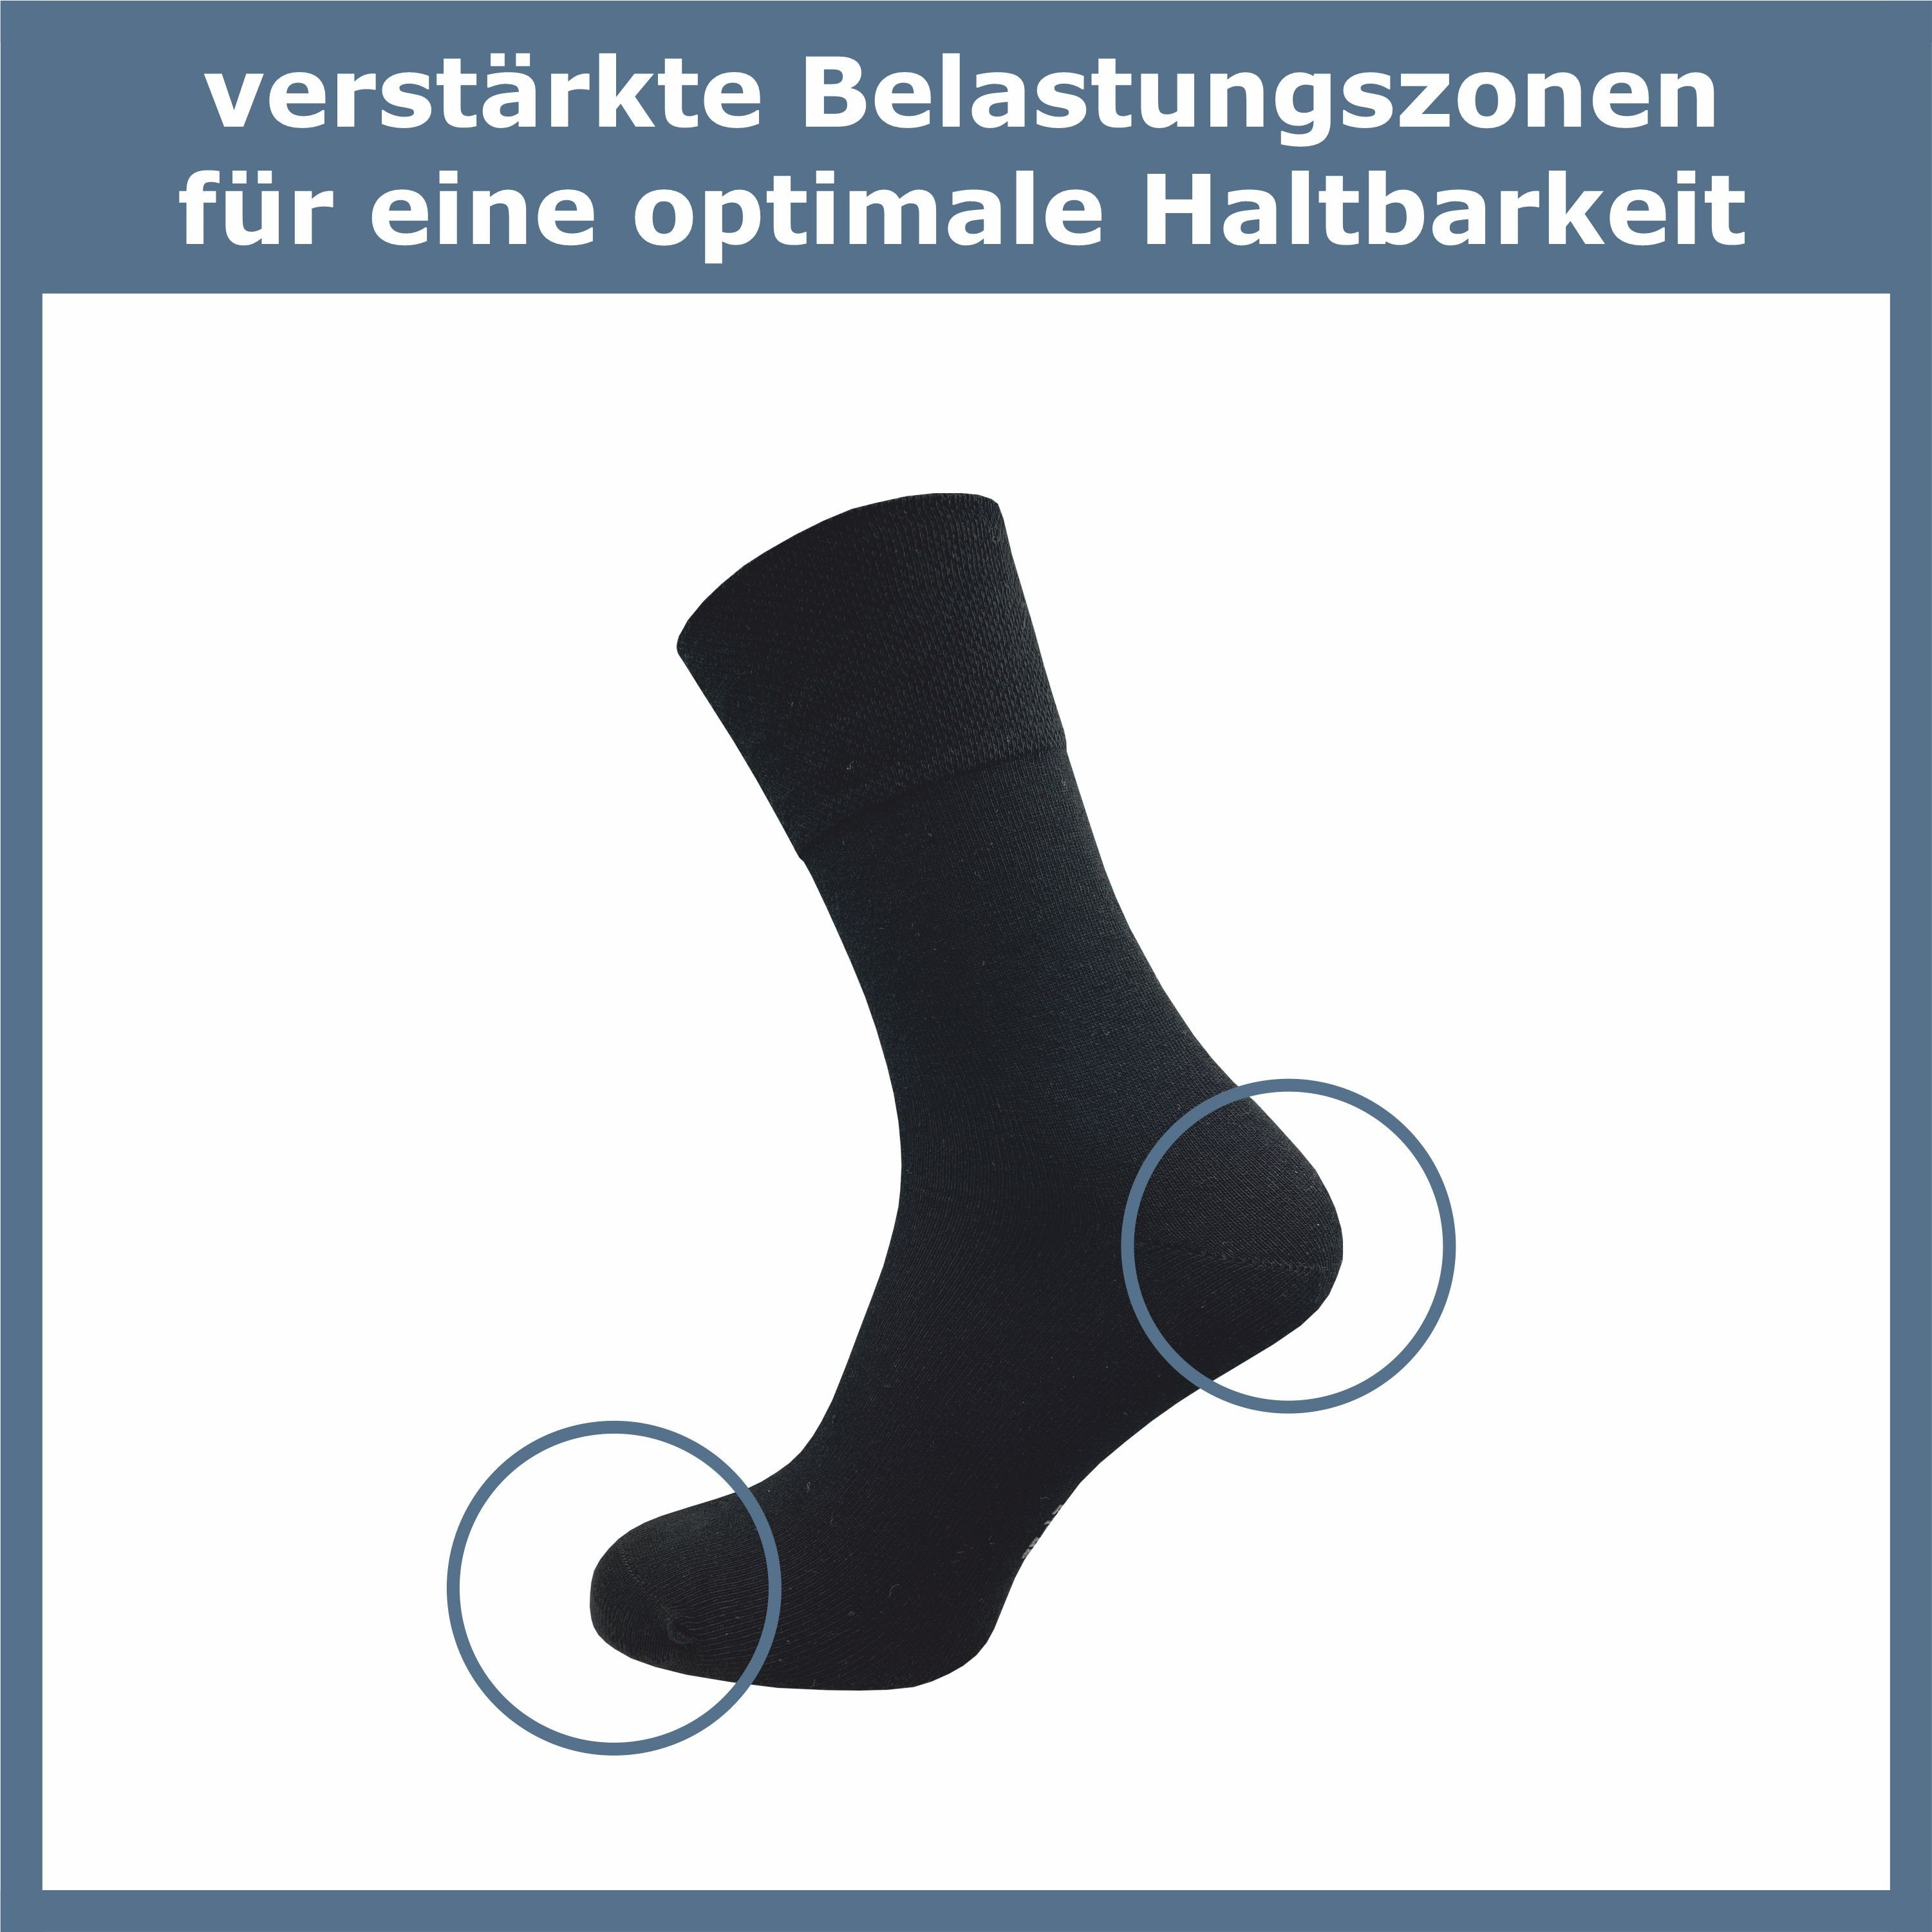 GAWILO Diabetikersocken für Damen, extra ohne - schwarz, in weitere breiter Piquet-Strick & ohne & am drückende Business Socke (6 Naht Gummidruck grau Komfortbund; Paar)